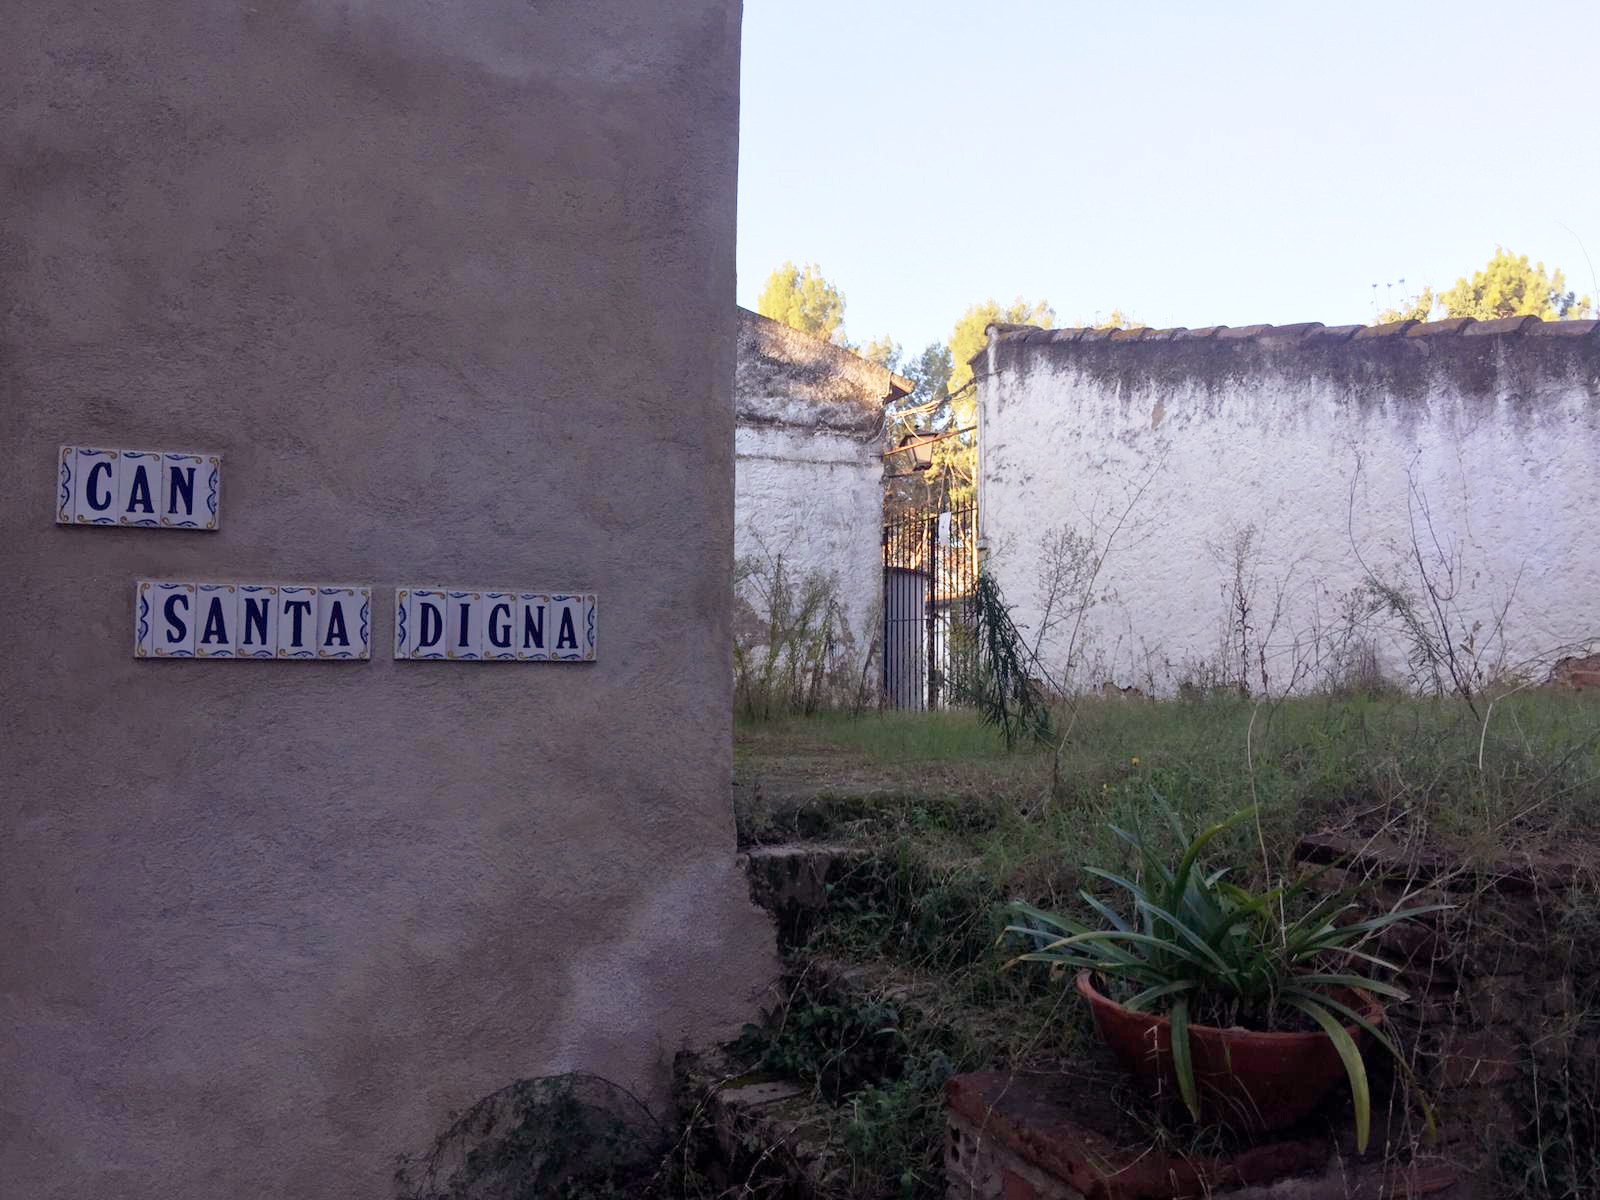 Can Santa Digna